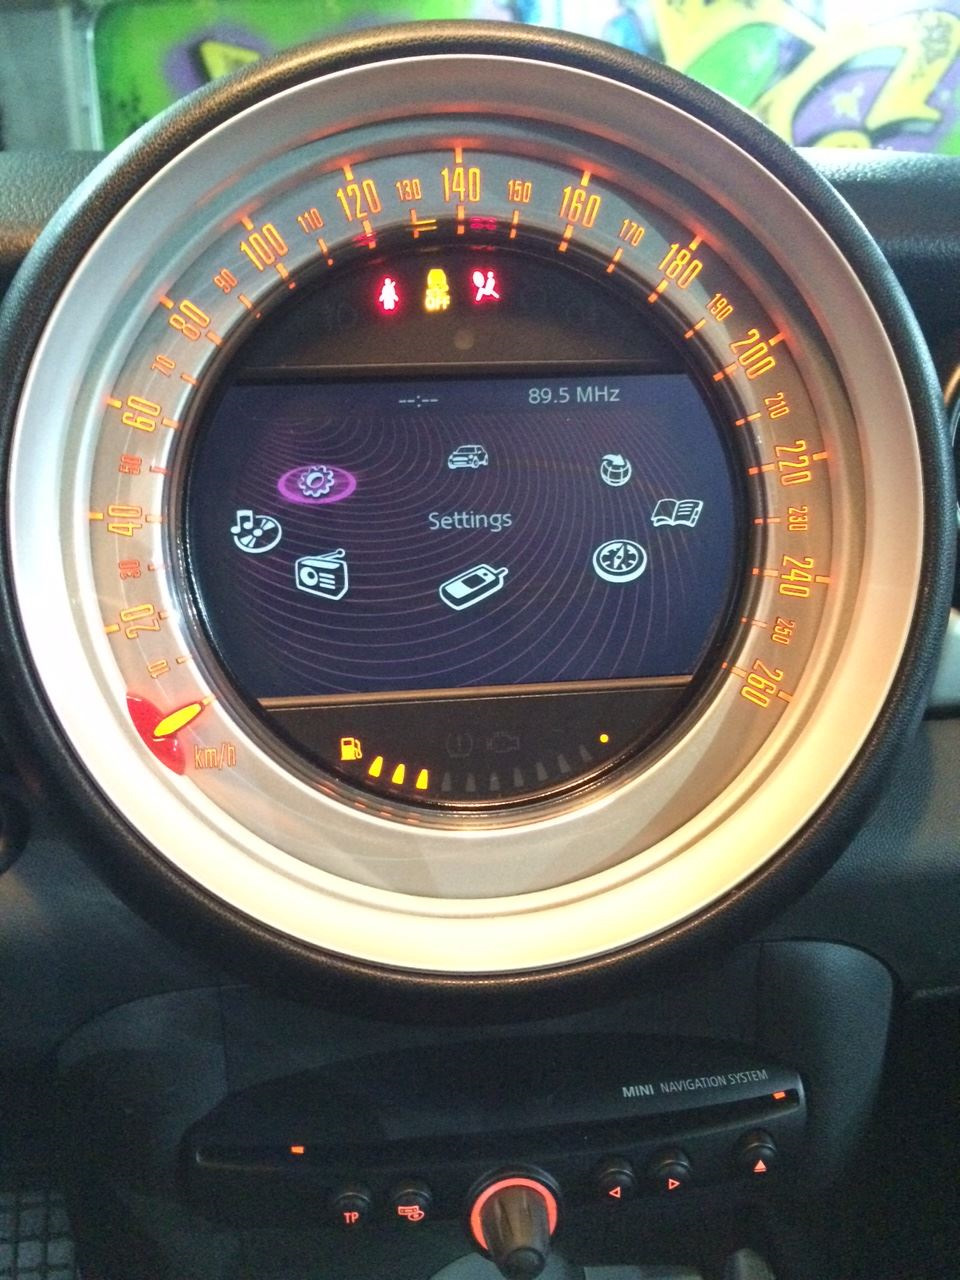 Wireless Mini CIC NBT EVO SYSTEM BMW Carplay Android Auto wireless Interface 5